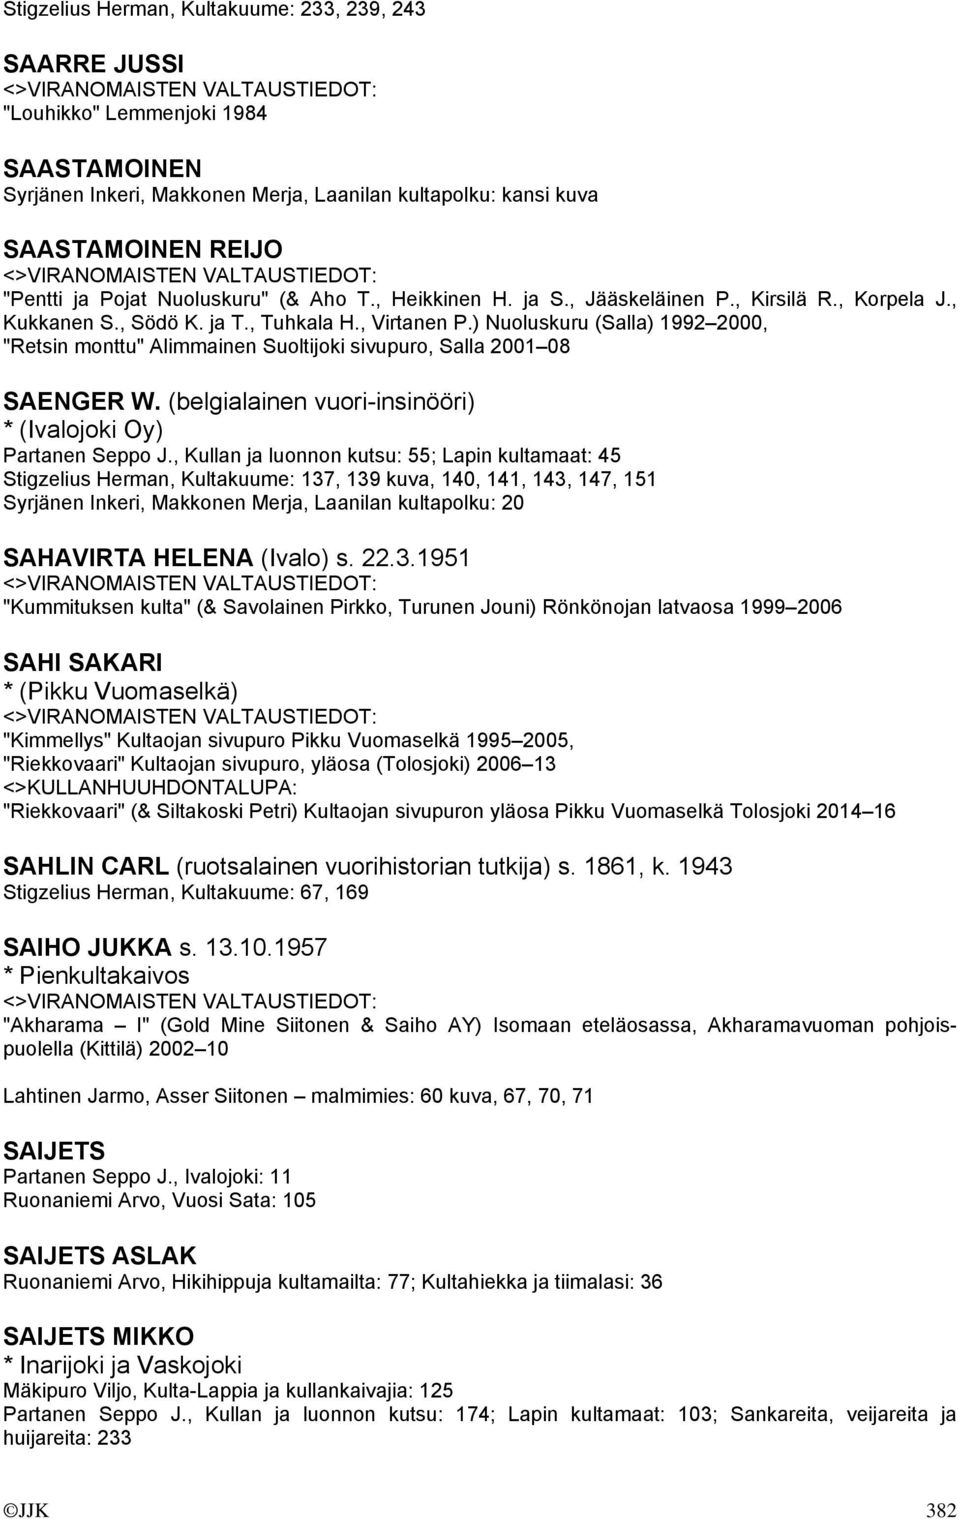 ) Nuoluskuru (Salla) 1992 2000, "Retsin monttu" Alimmainen Suoltijoki sivupuro, Salla 2001 08 SAENGER W. (belgialainen vuori-insinööri) * (Ivalojoki Oy) Partanen Seppo J.